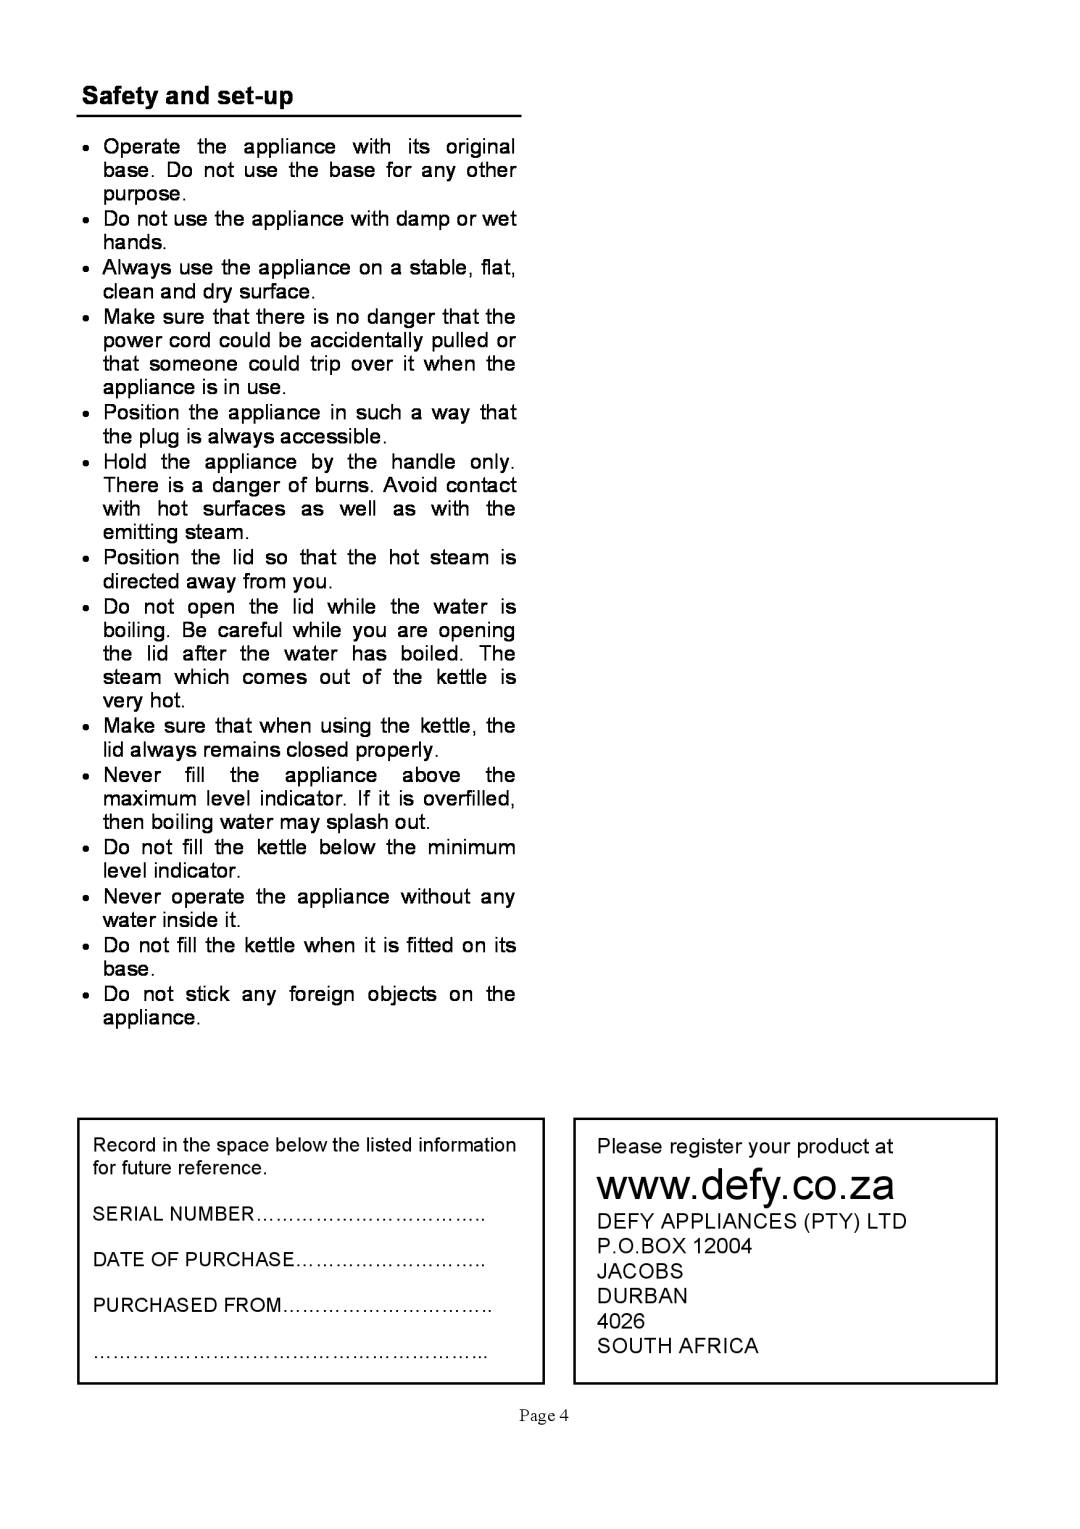 Defy Appliances WK630 manual 